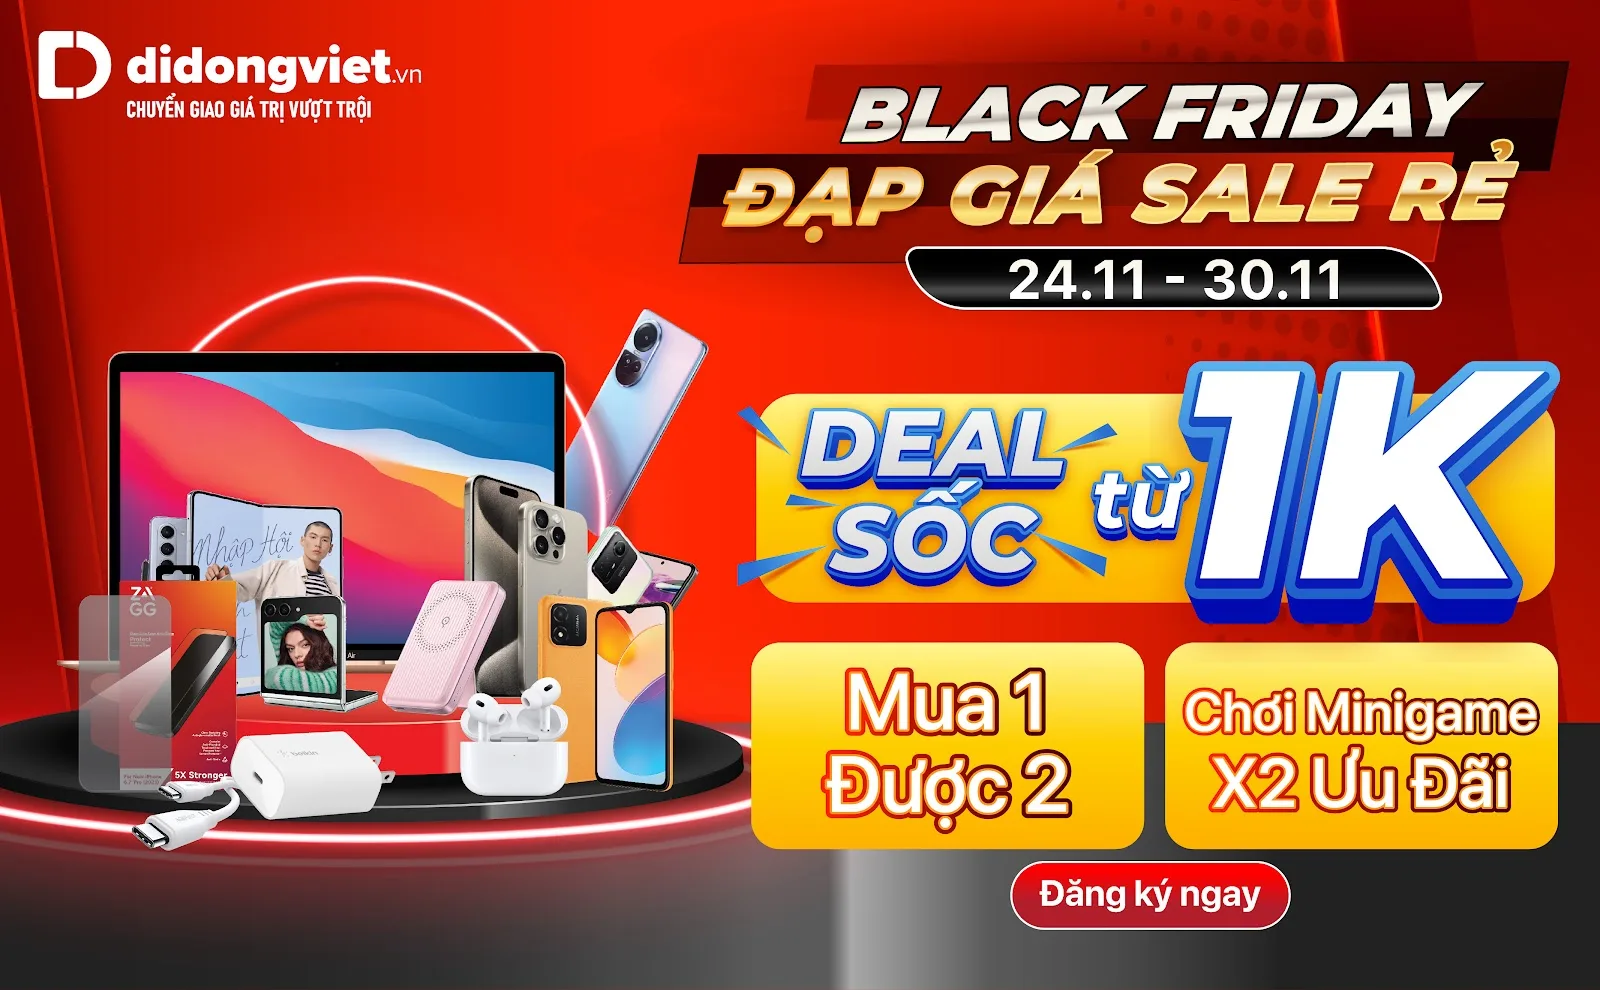 Di Động Việt tung chương trình sale Black Friday, giảm đến 80%